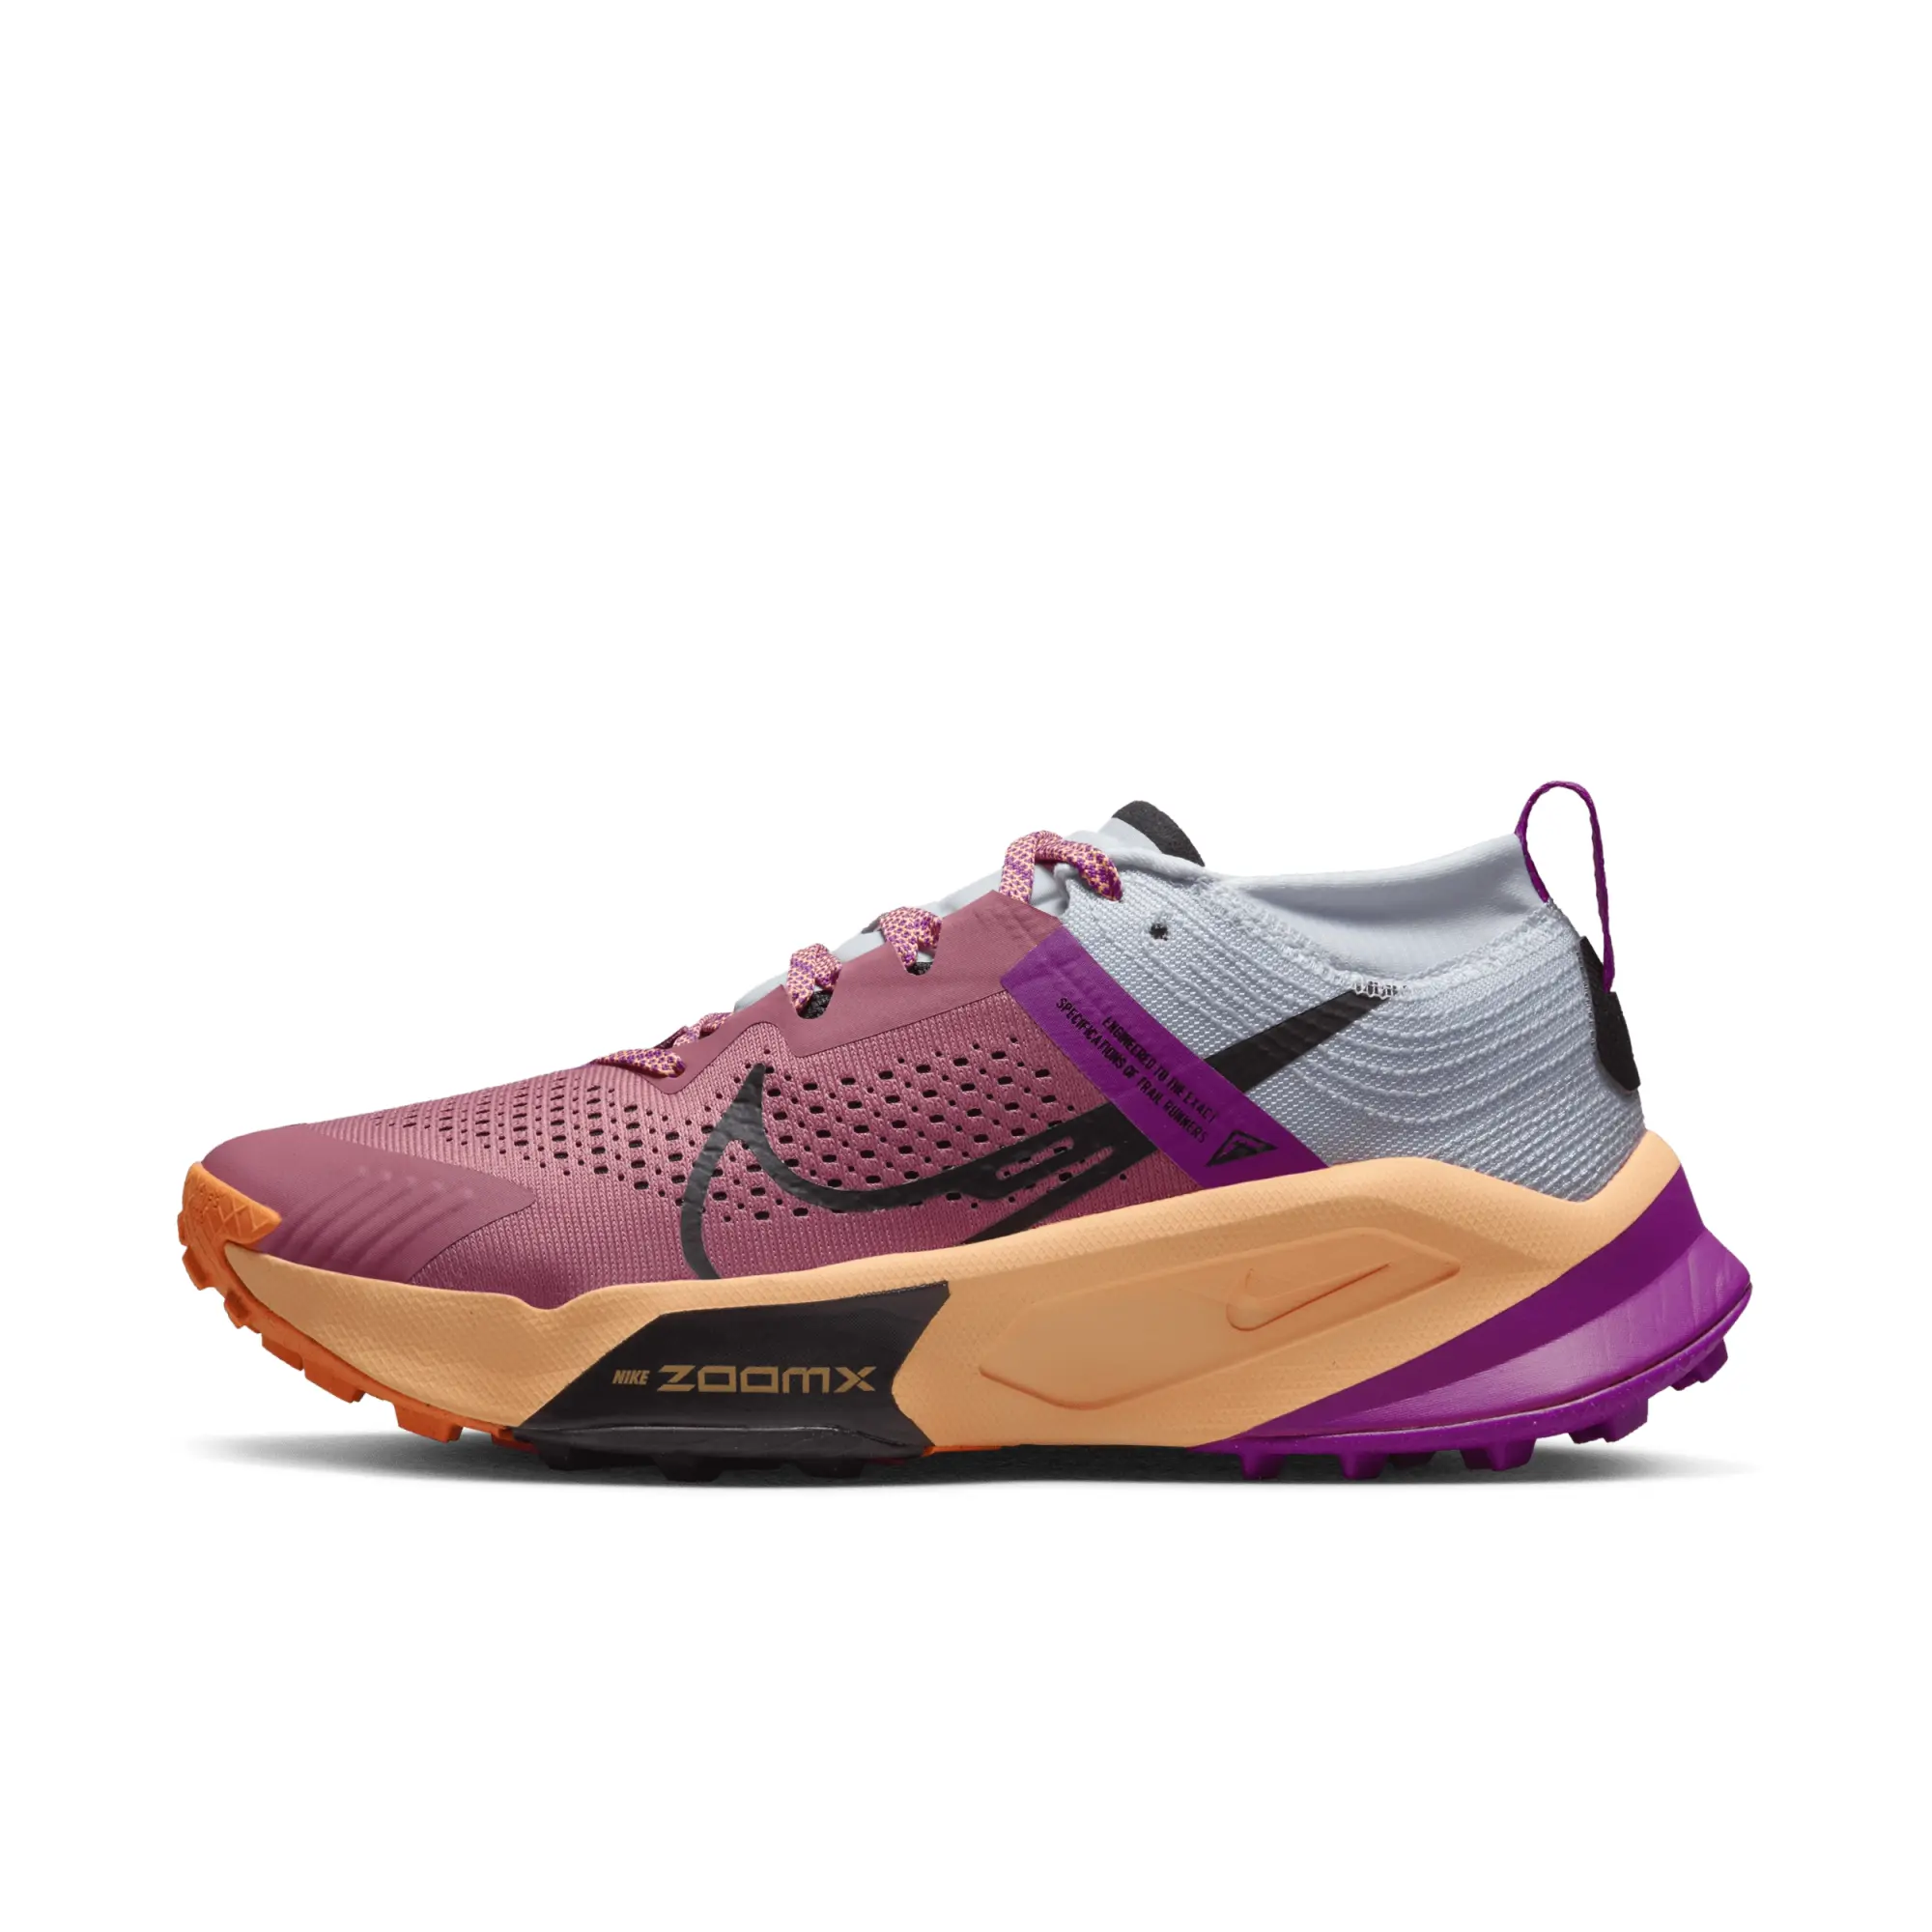 Nike Zegama Women's Trail-running Shoes - Pink